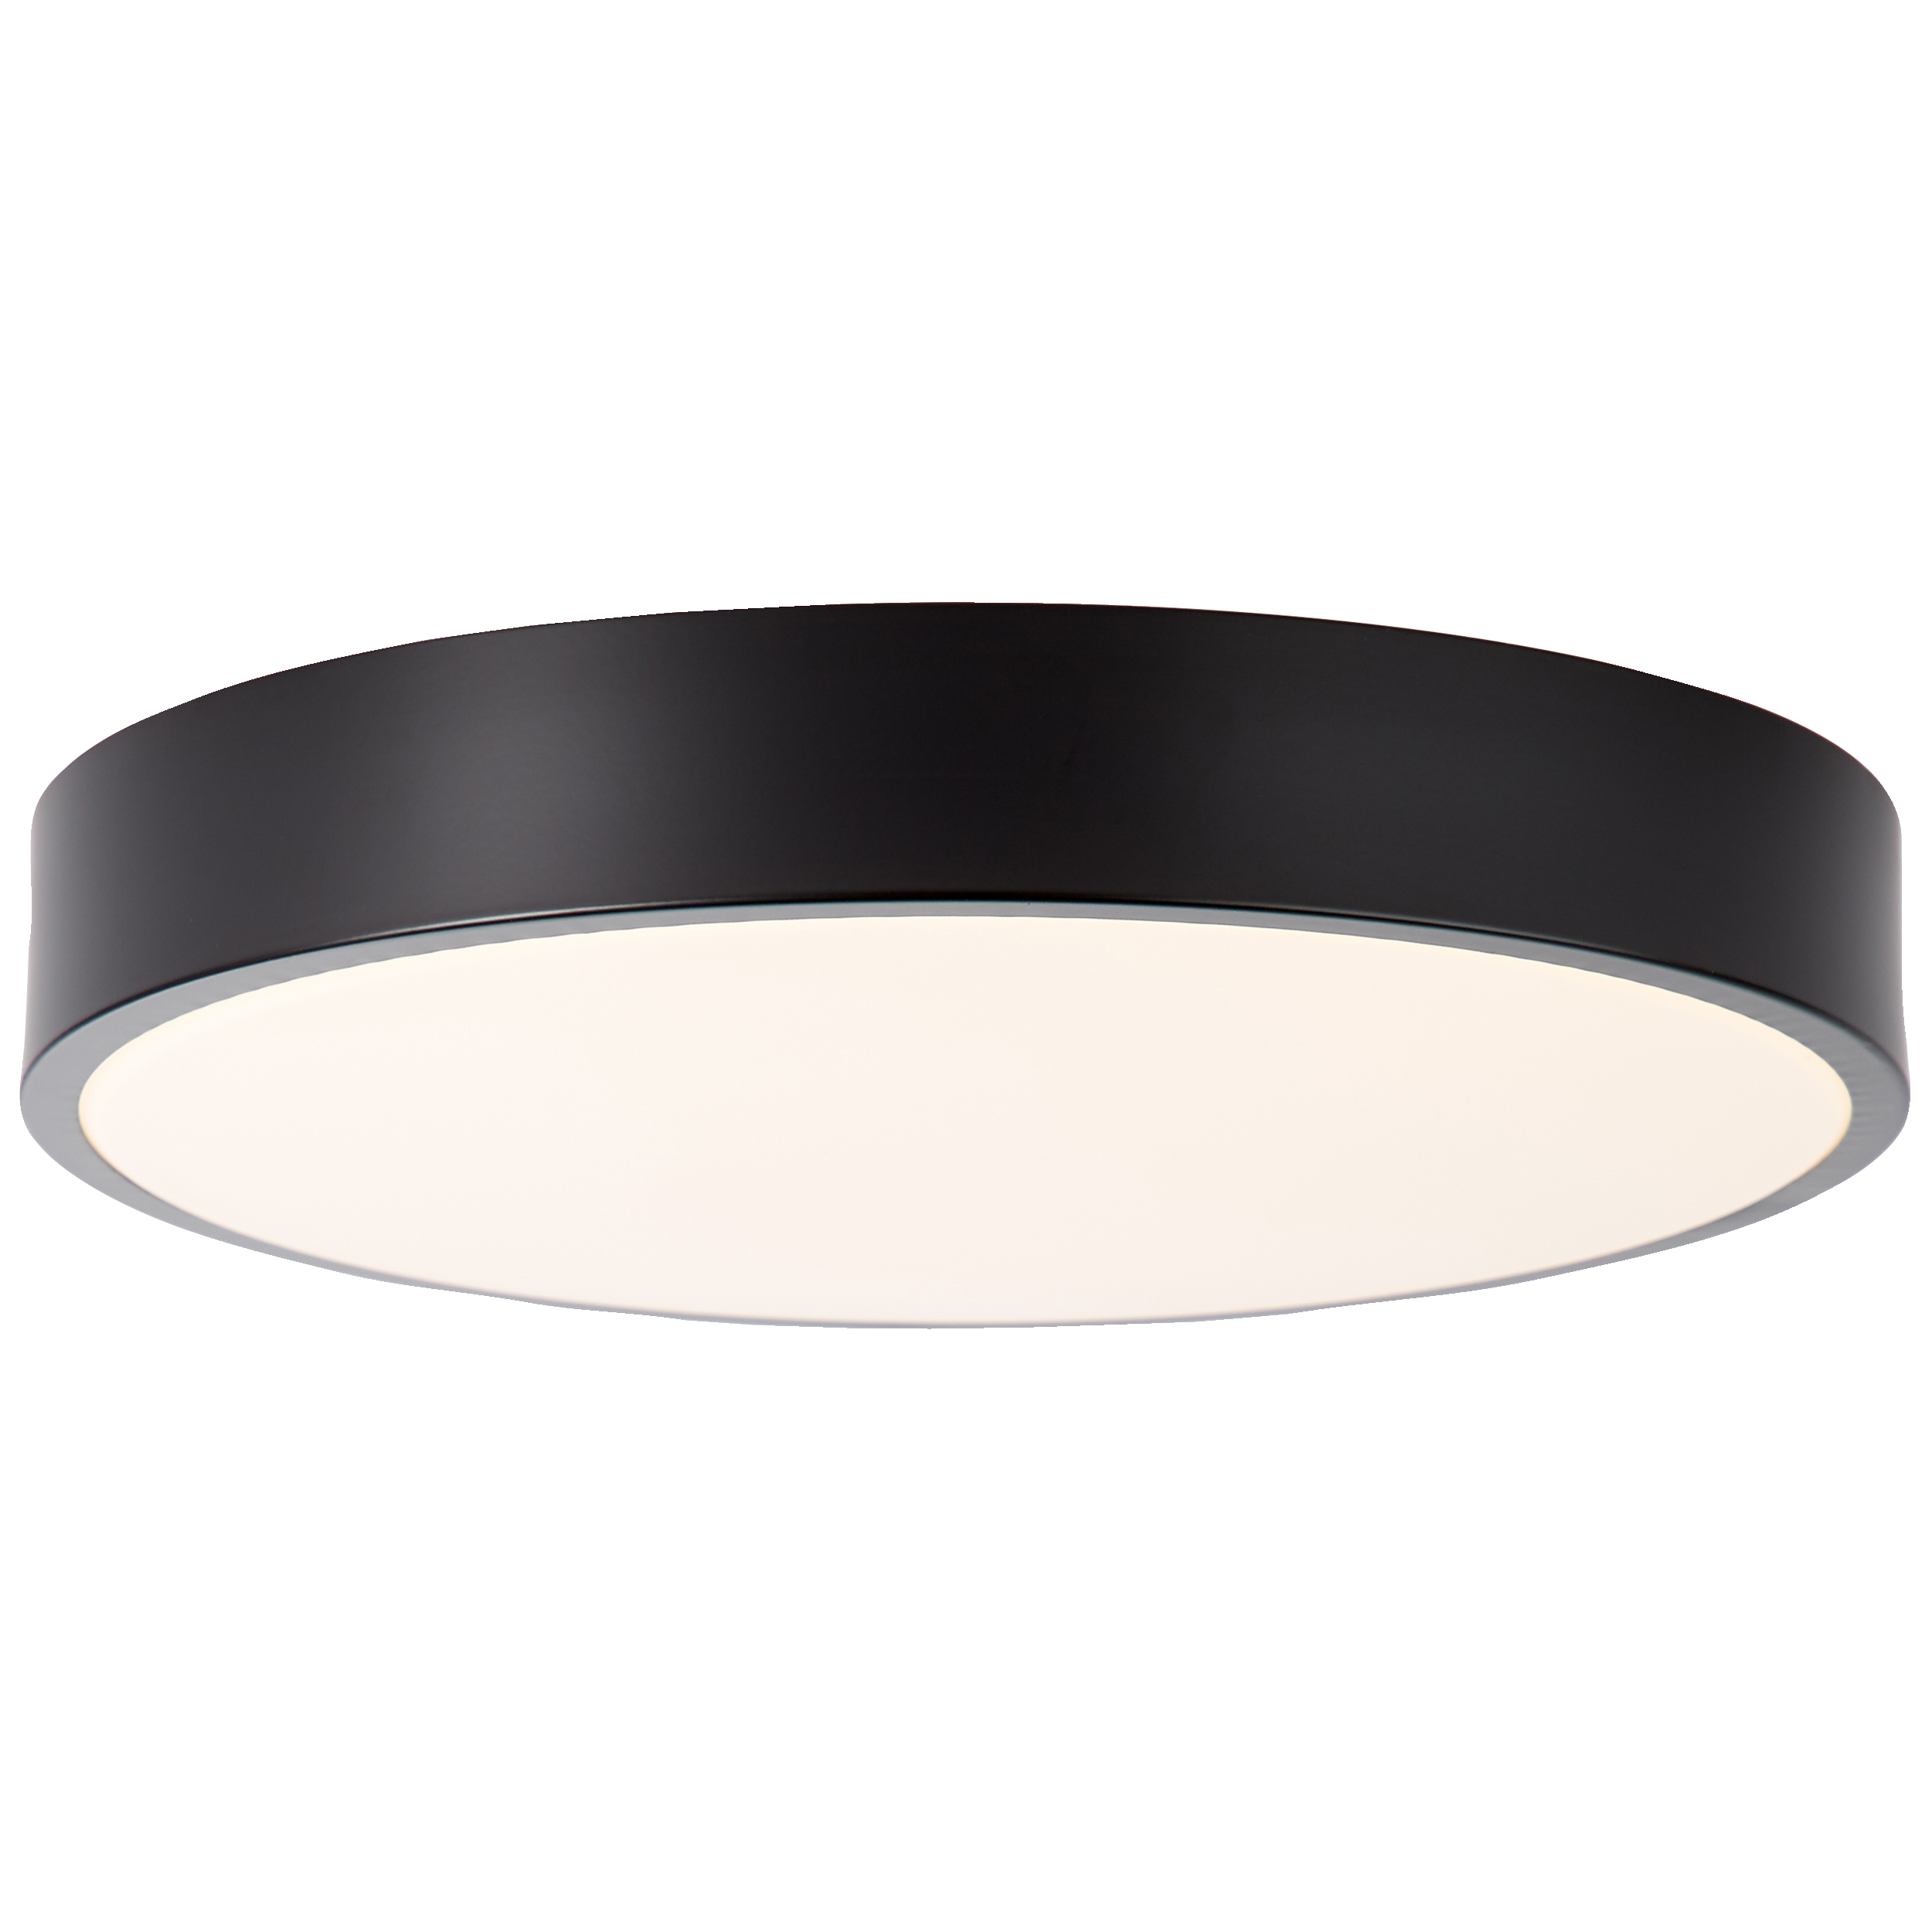 LED Deckenleuchte 33cm weiß/schwarz · GmbH Licht Lightbox Leuchten 